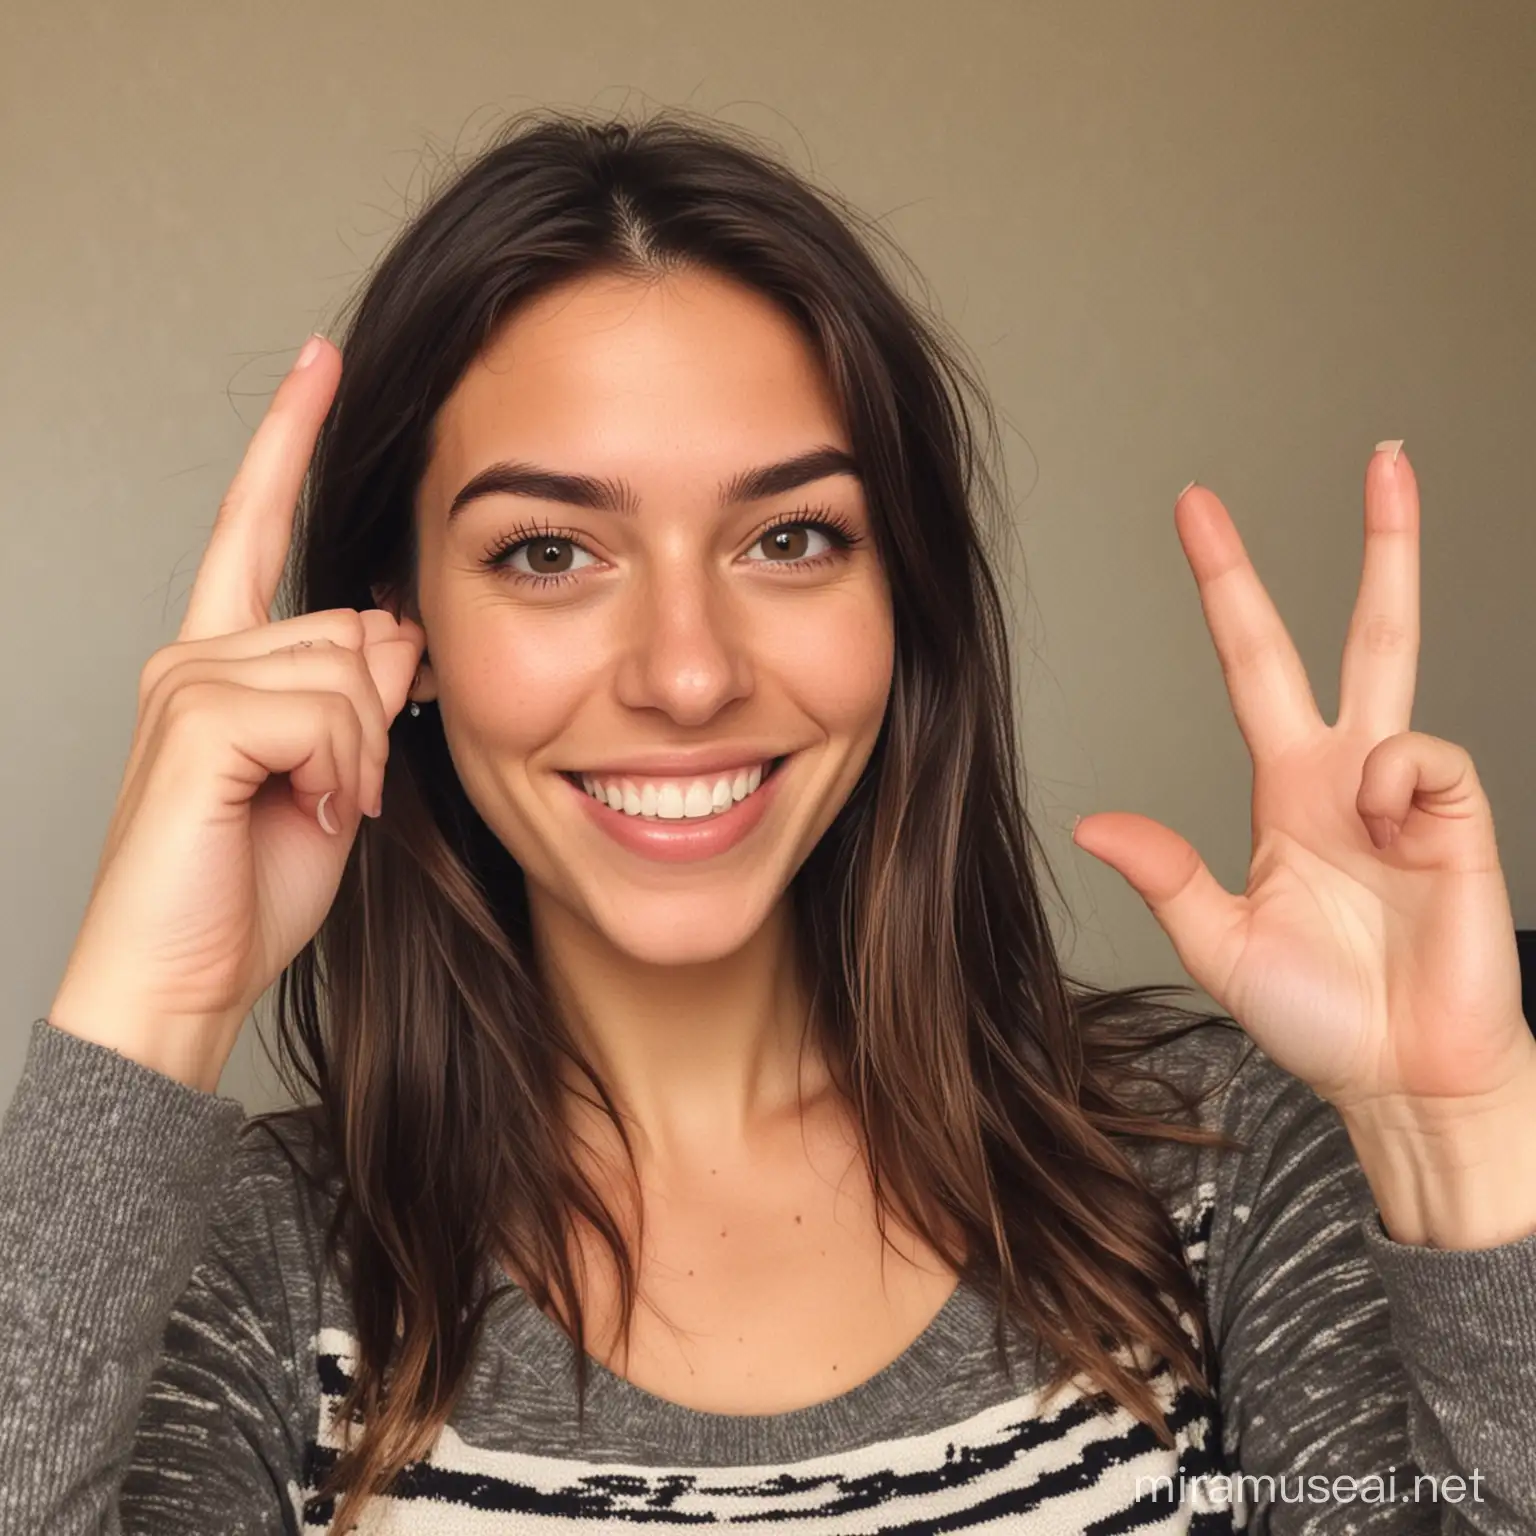 Une photo selfie d'une jeune femme de 27 ans, qui sourit à la caméra tout en montrant trois doigts.